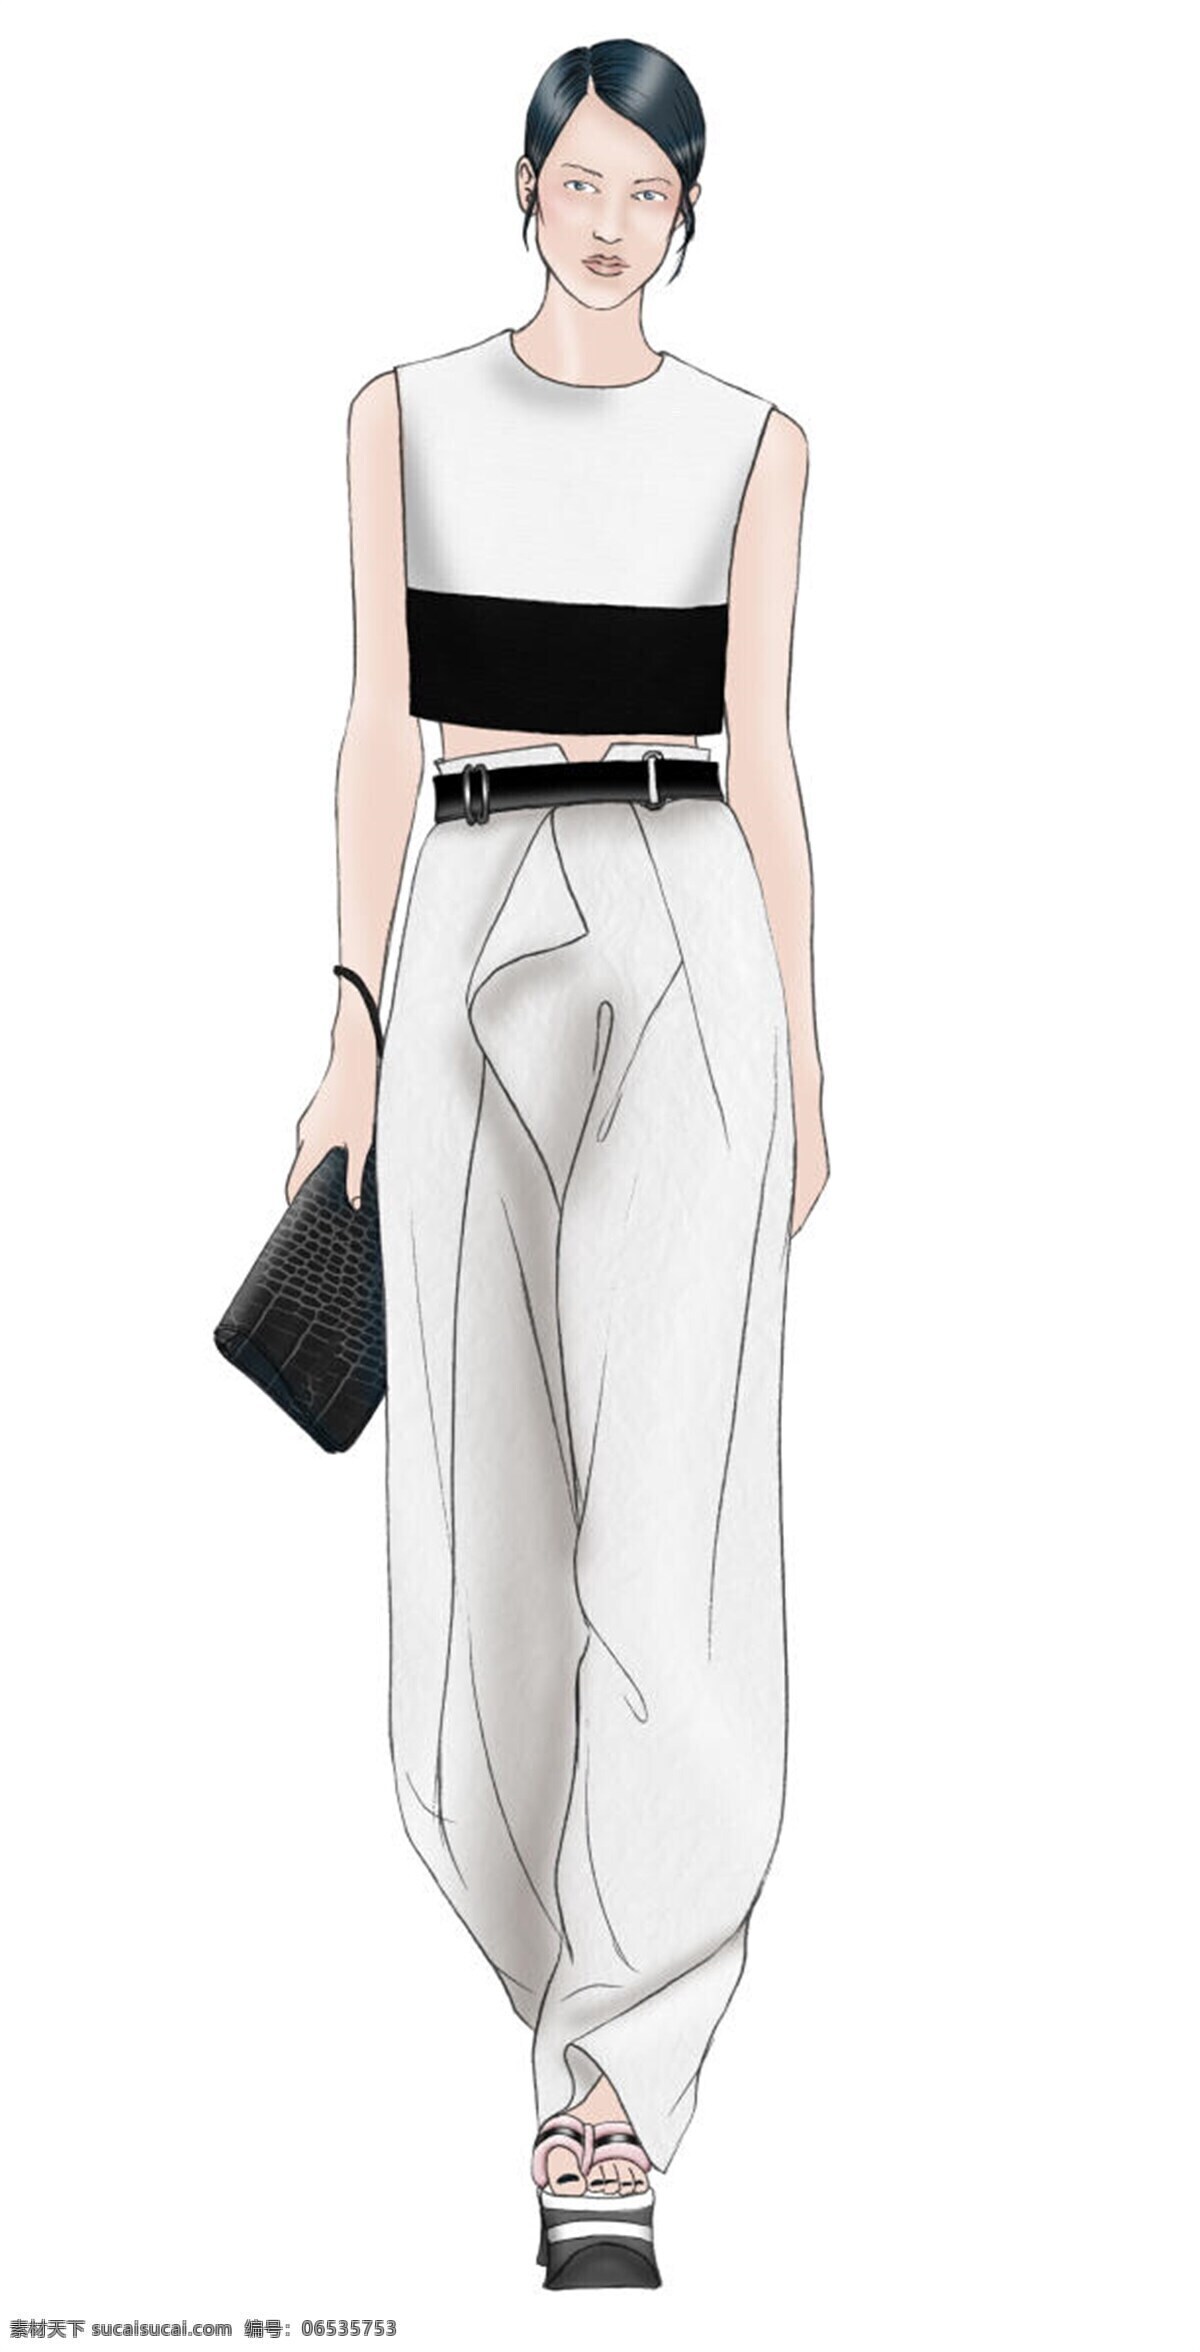 白色裤子 服装设计 黑色包包 女装 无袖 简约 白色 背心 效果图